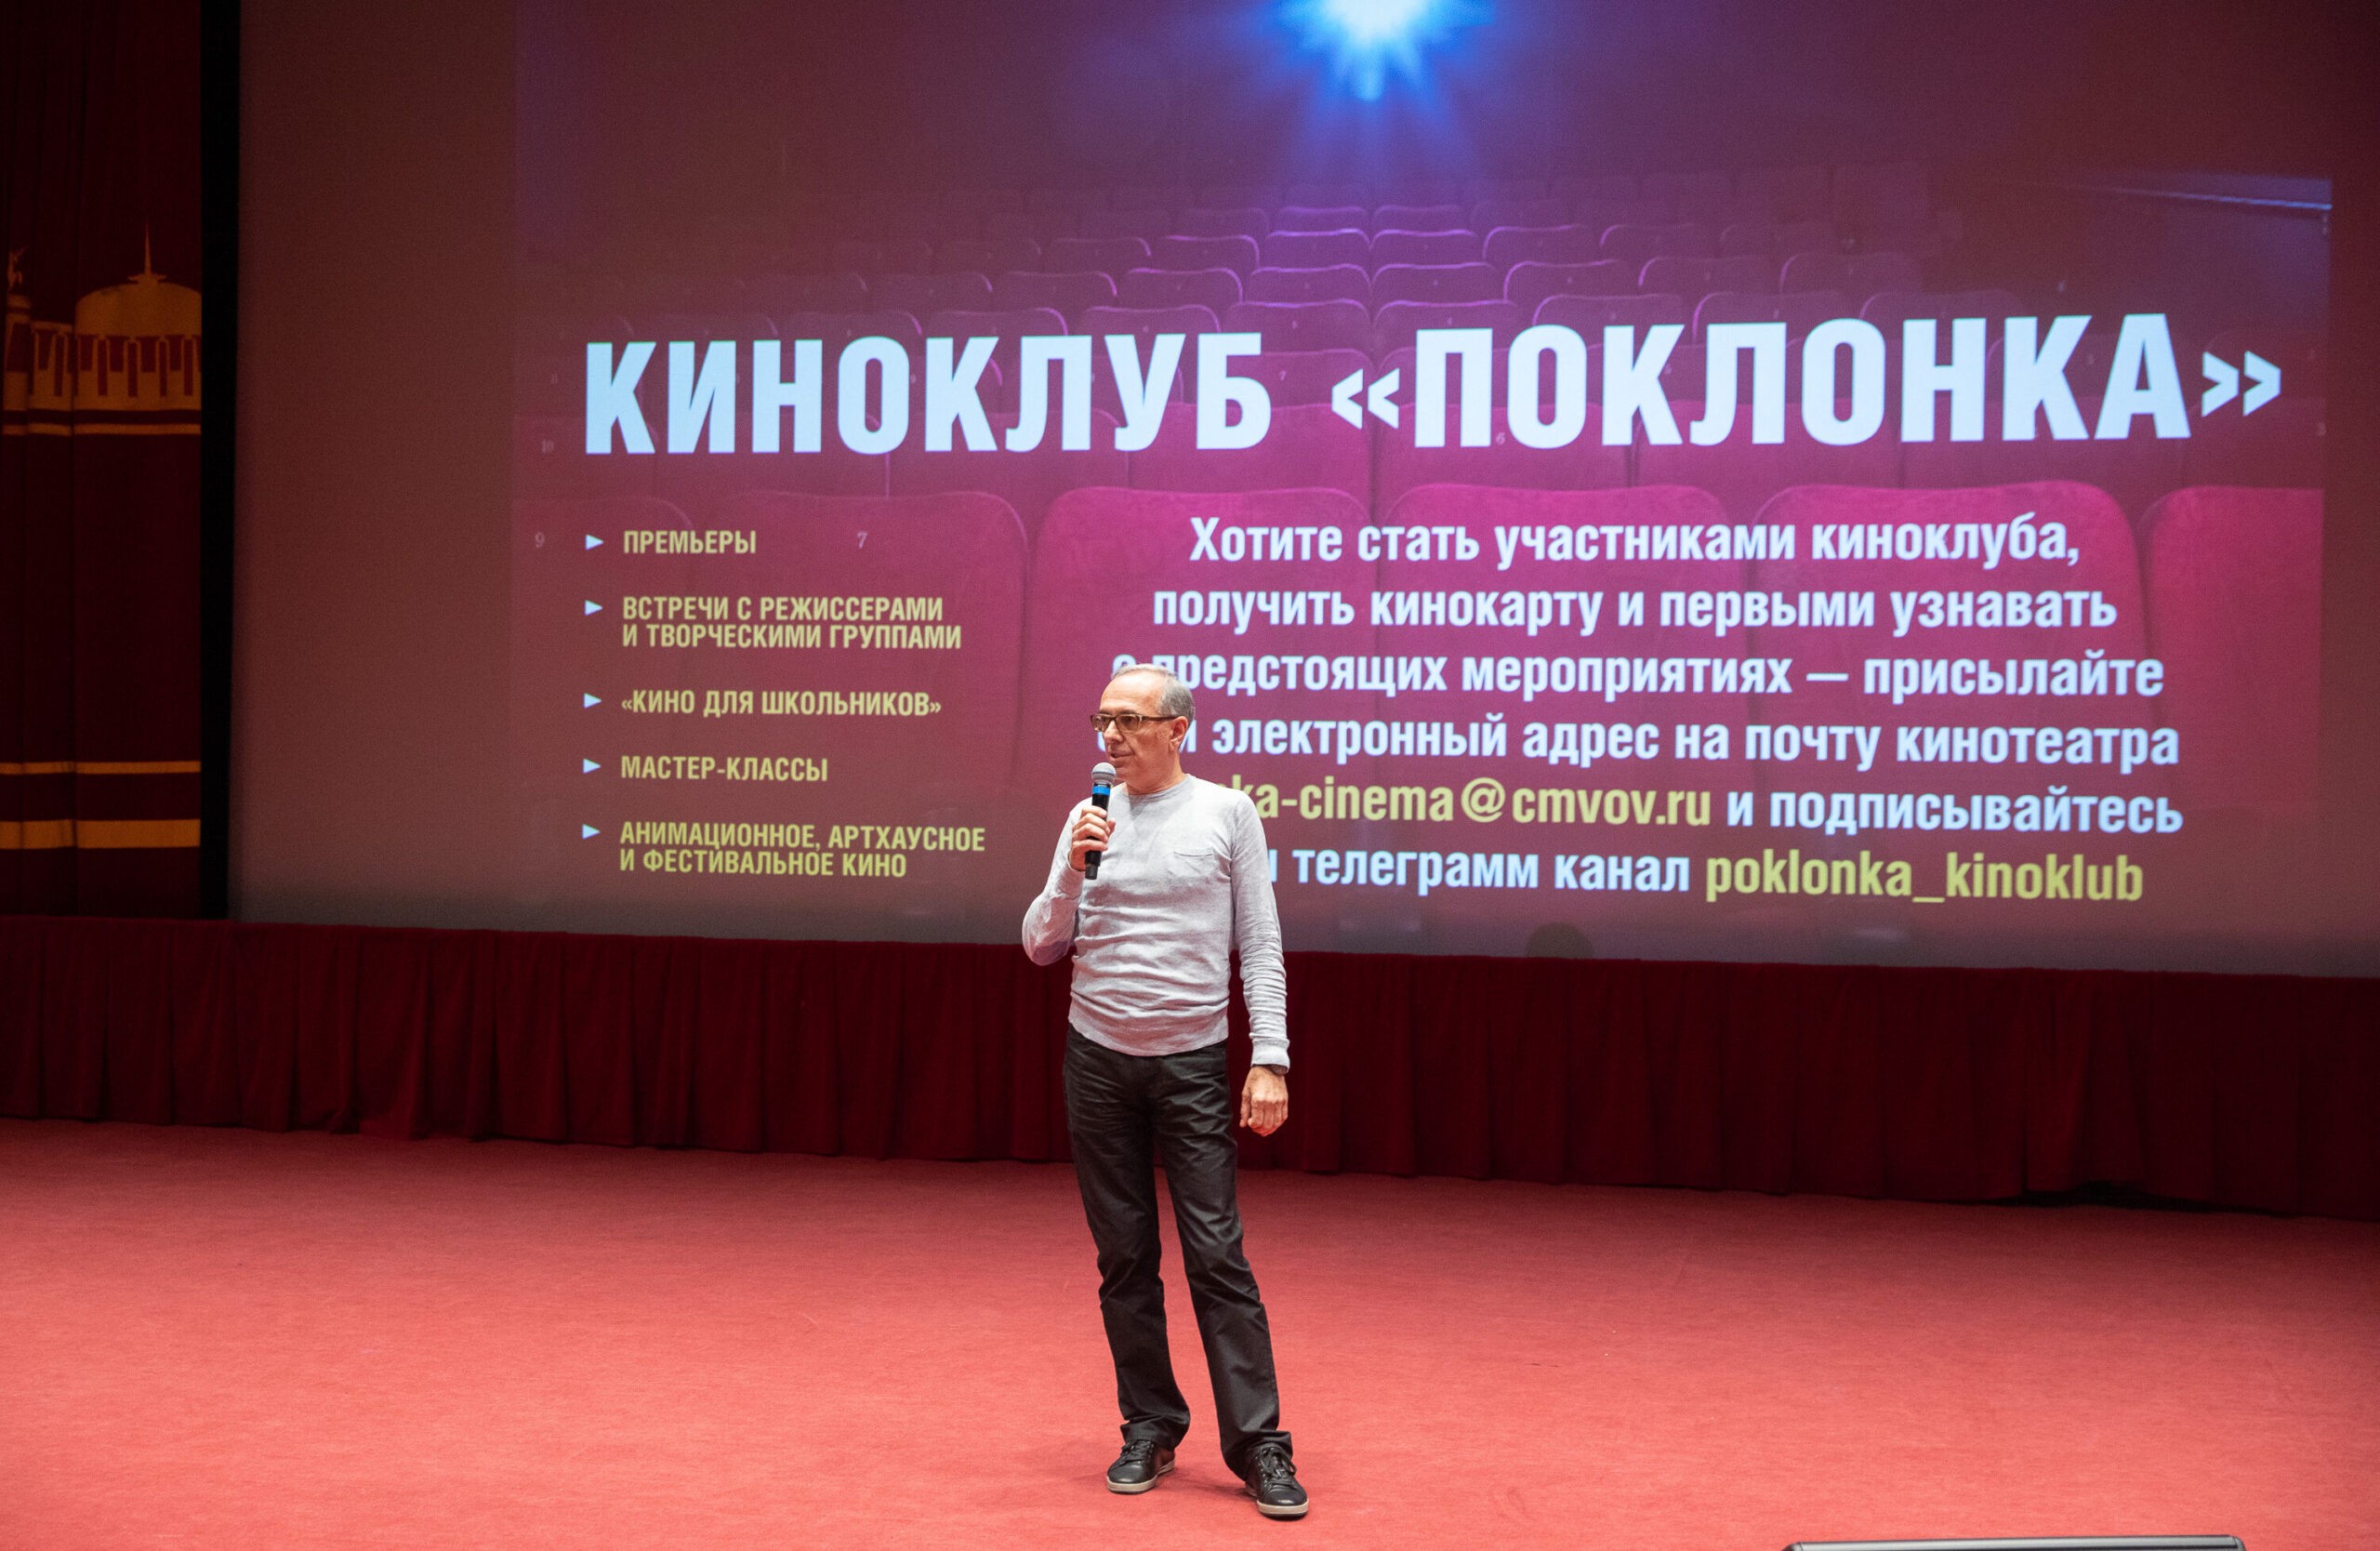 Историю Федора Конюхова обсудят зрители киноклуба